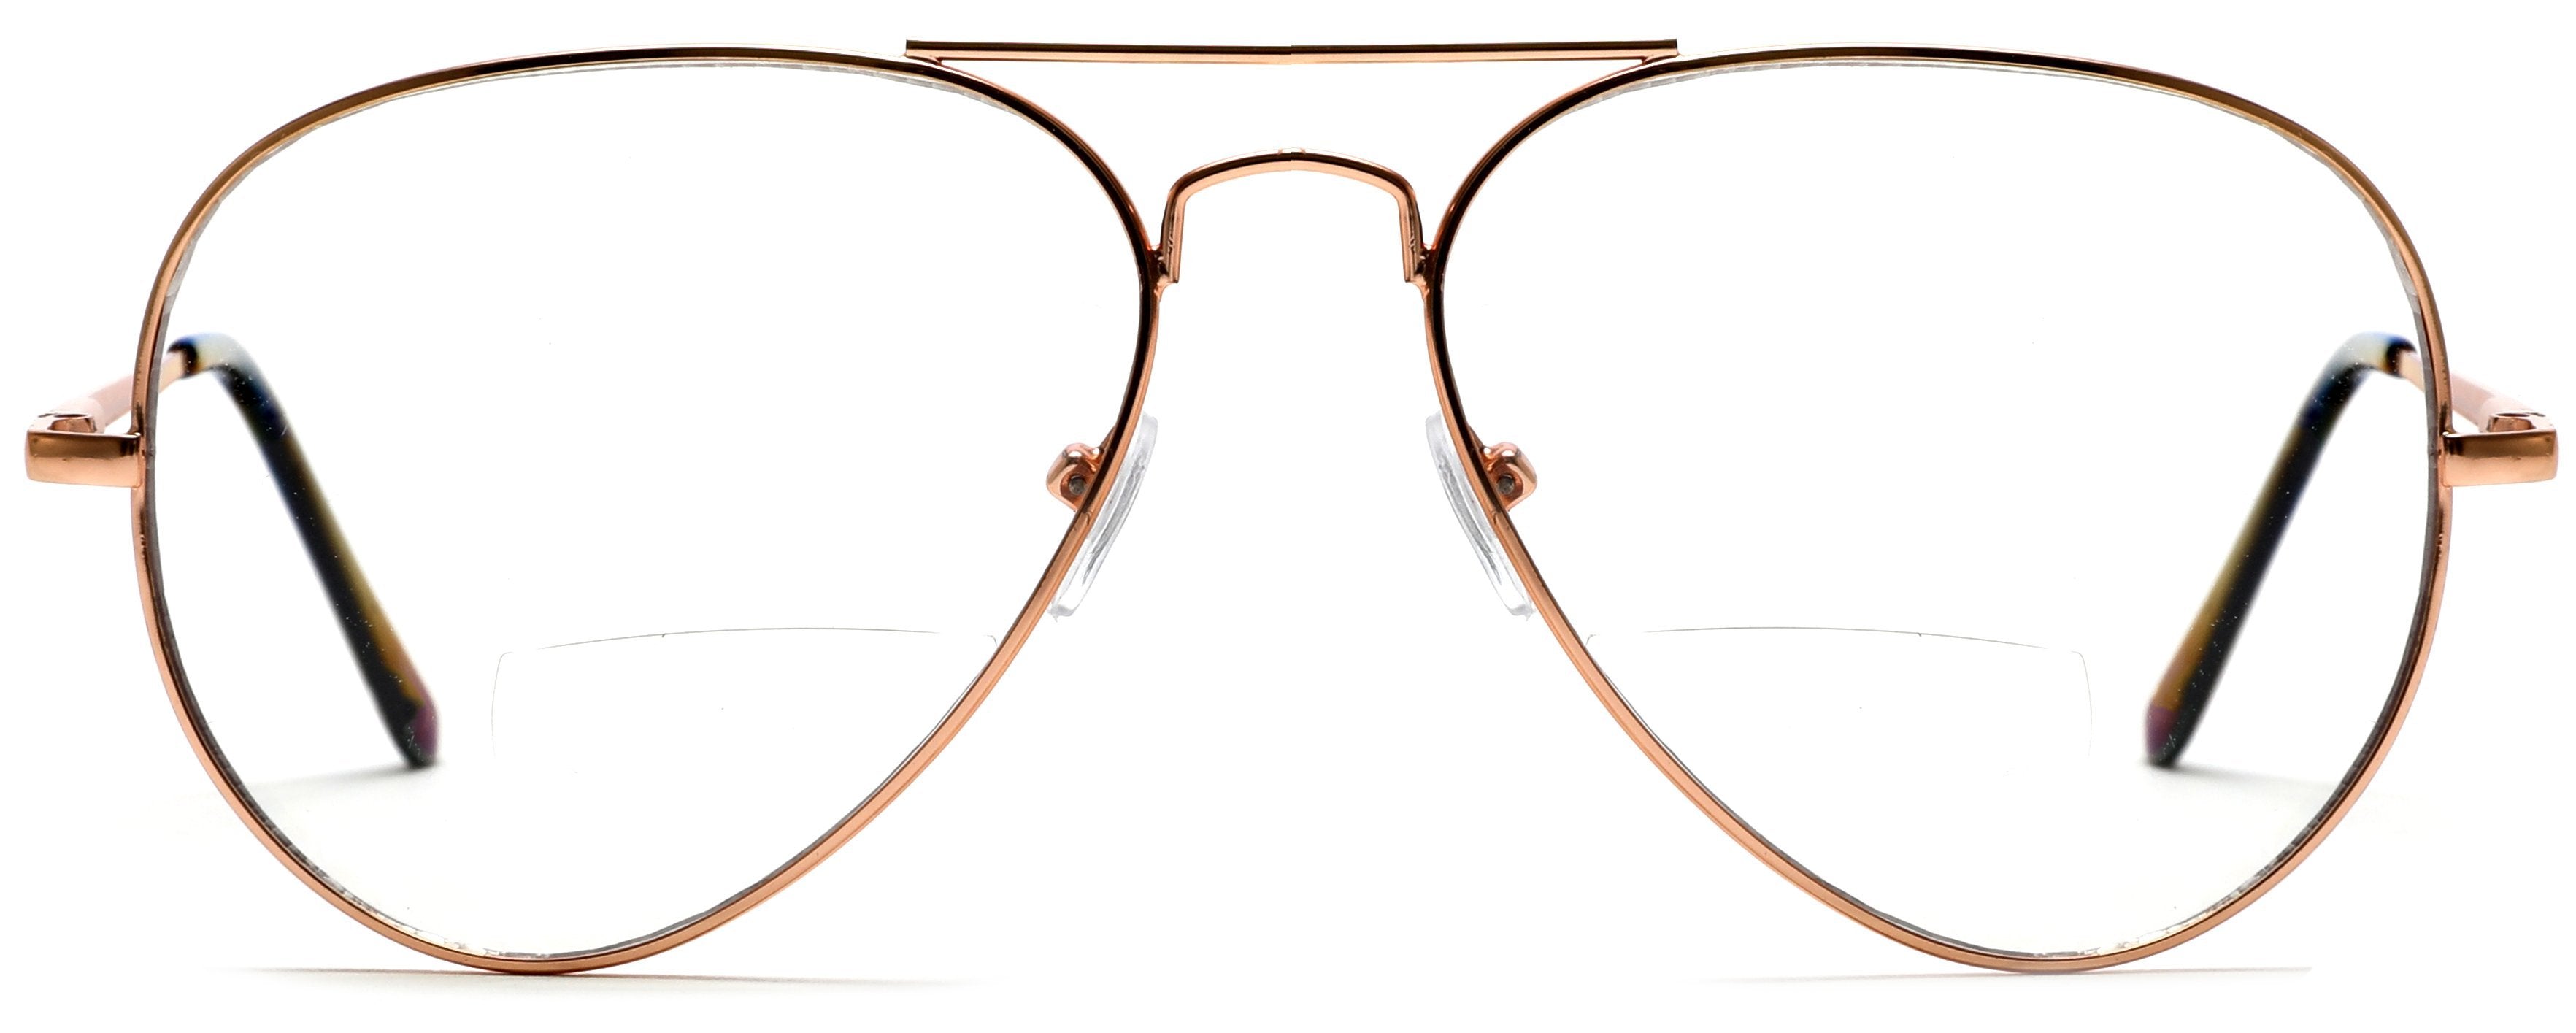 Beach Copper Tango Optics Bi-Focal Pink Pilot Glasses Readers Magnification Rx